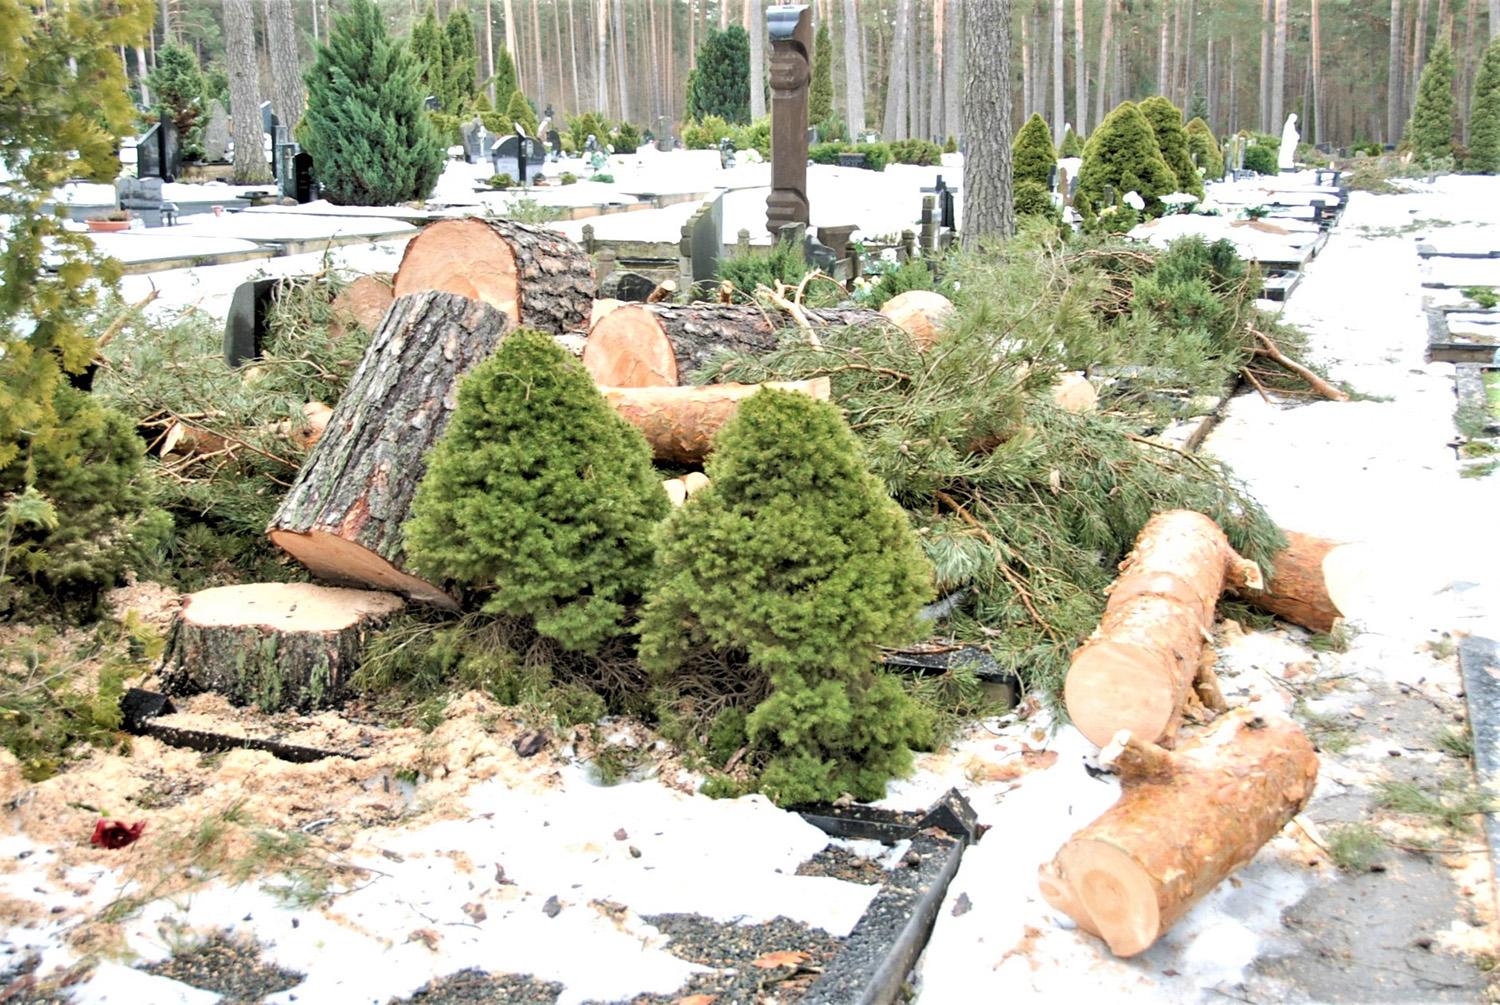 Gyventojus papiktino ant kapų suversta mediena / Išpjautų medžių dalys paliktos tiesiog ant kapaviečių.  Gedimino Nemunaičio nuotr.